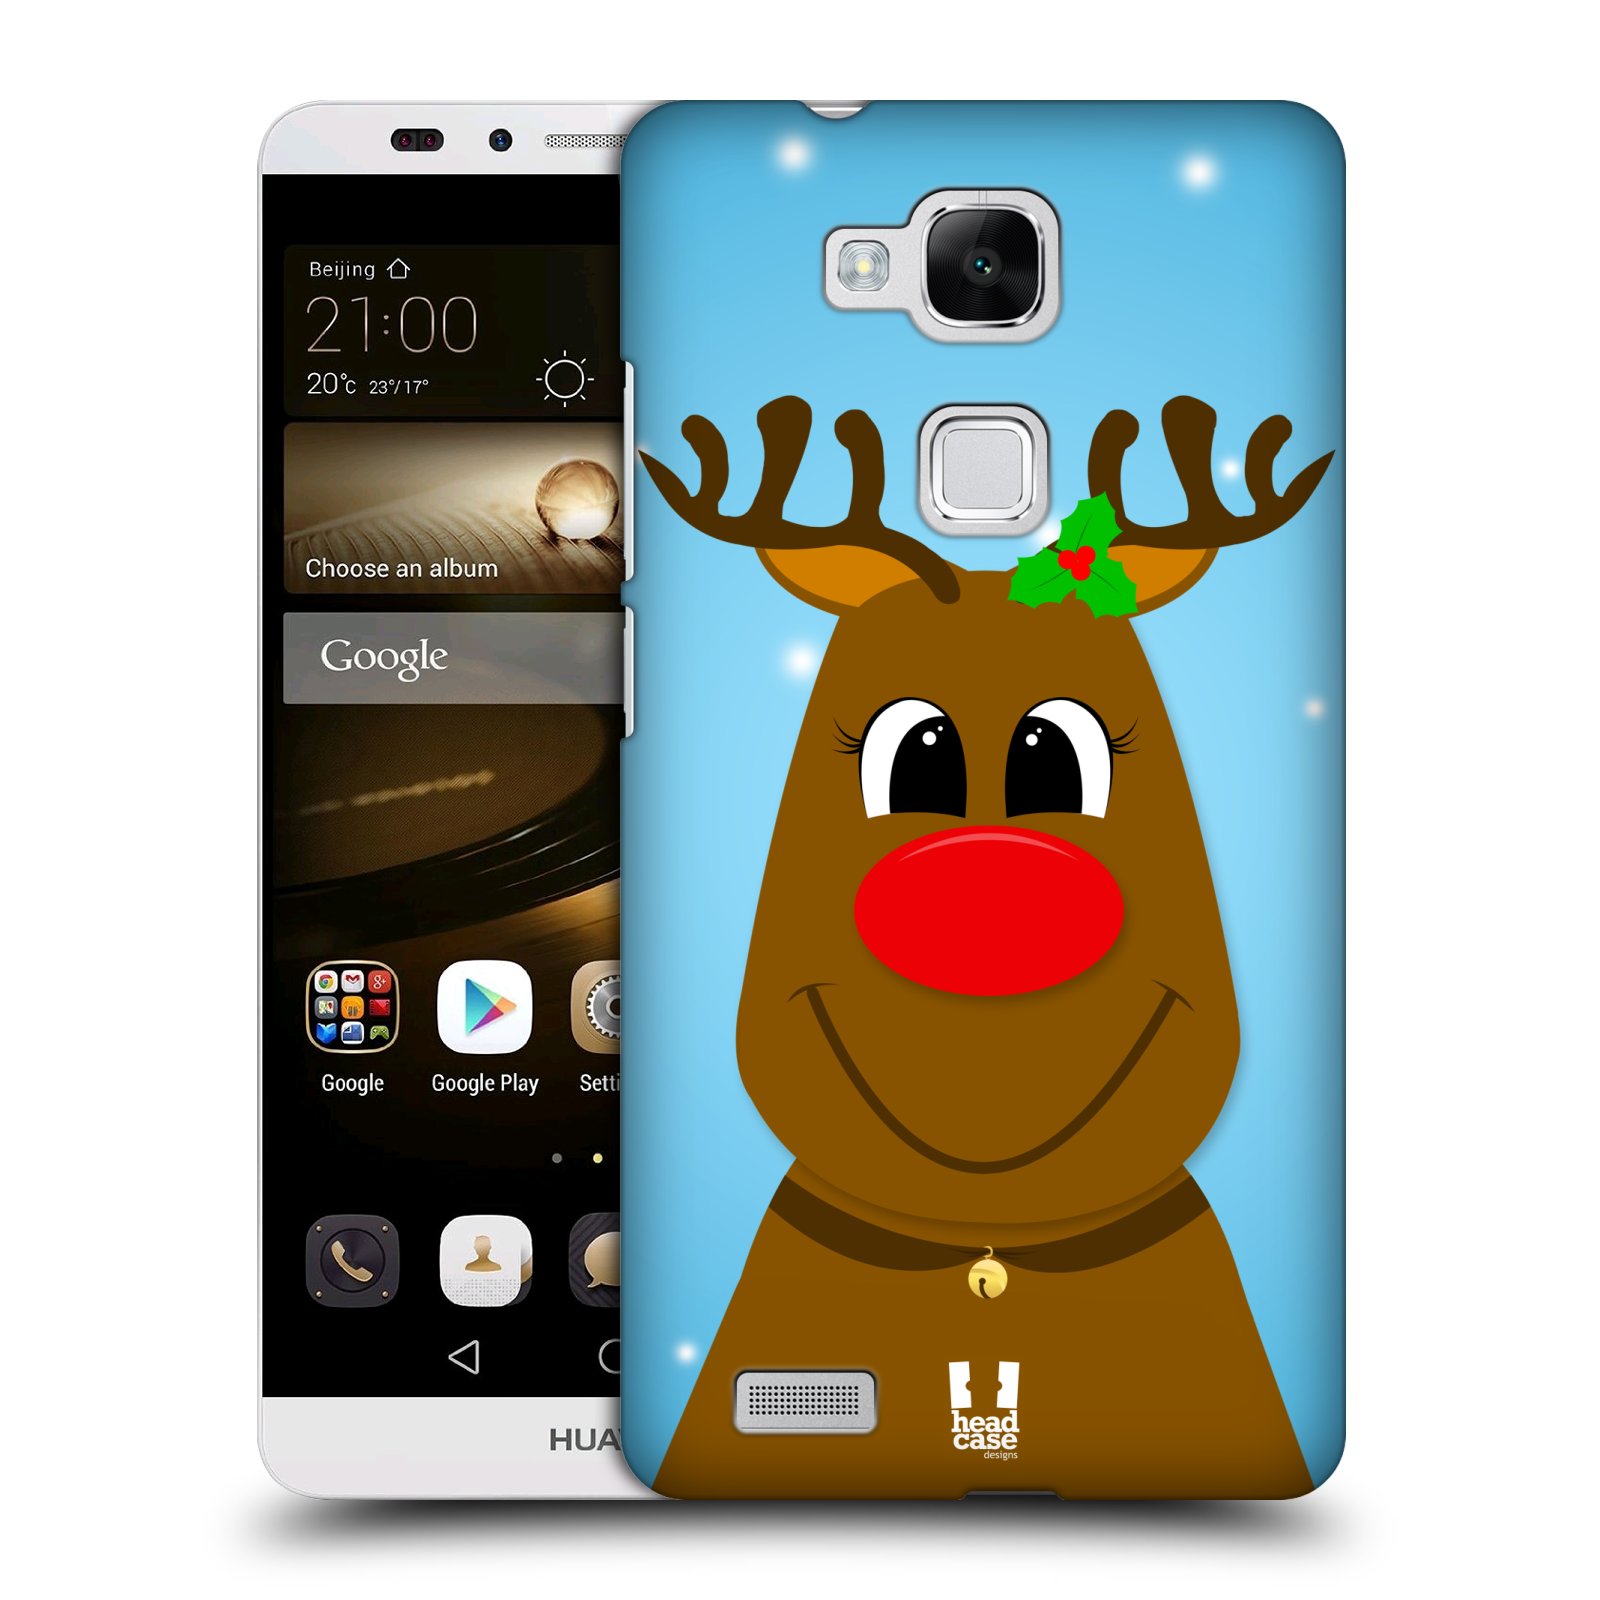 HEAD CASE plastový obal na mobil Huawei Mate 7 vzor Vánoční tváře kreslené SOB RUDOLF